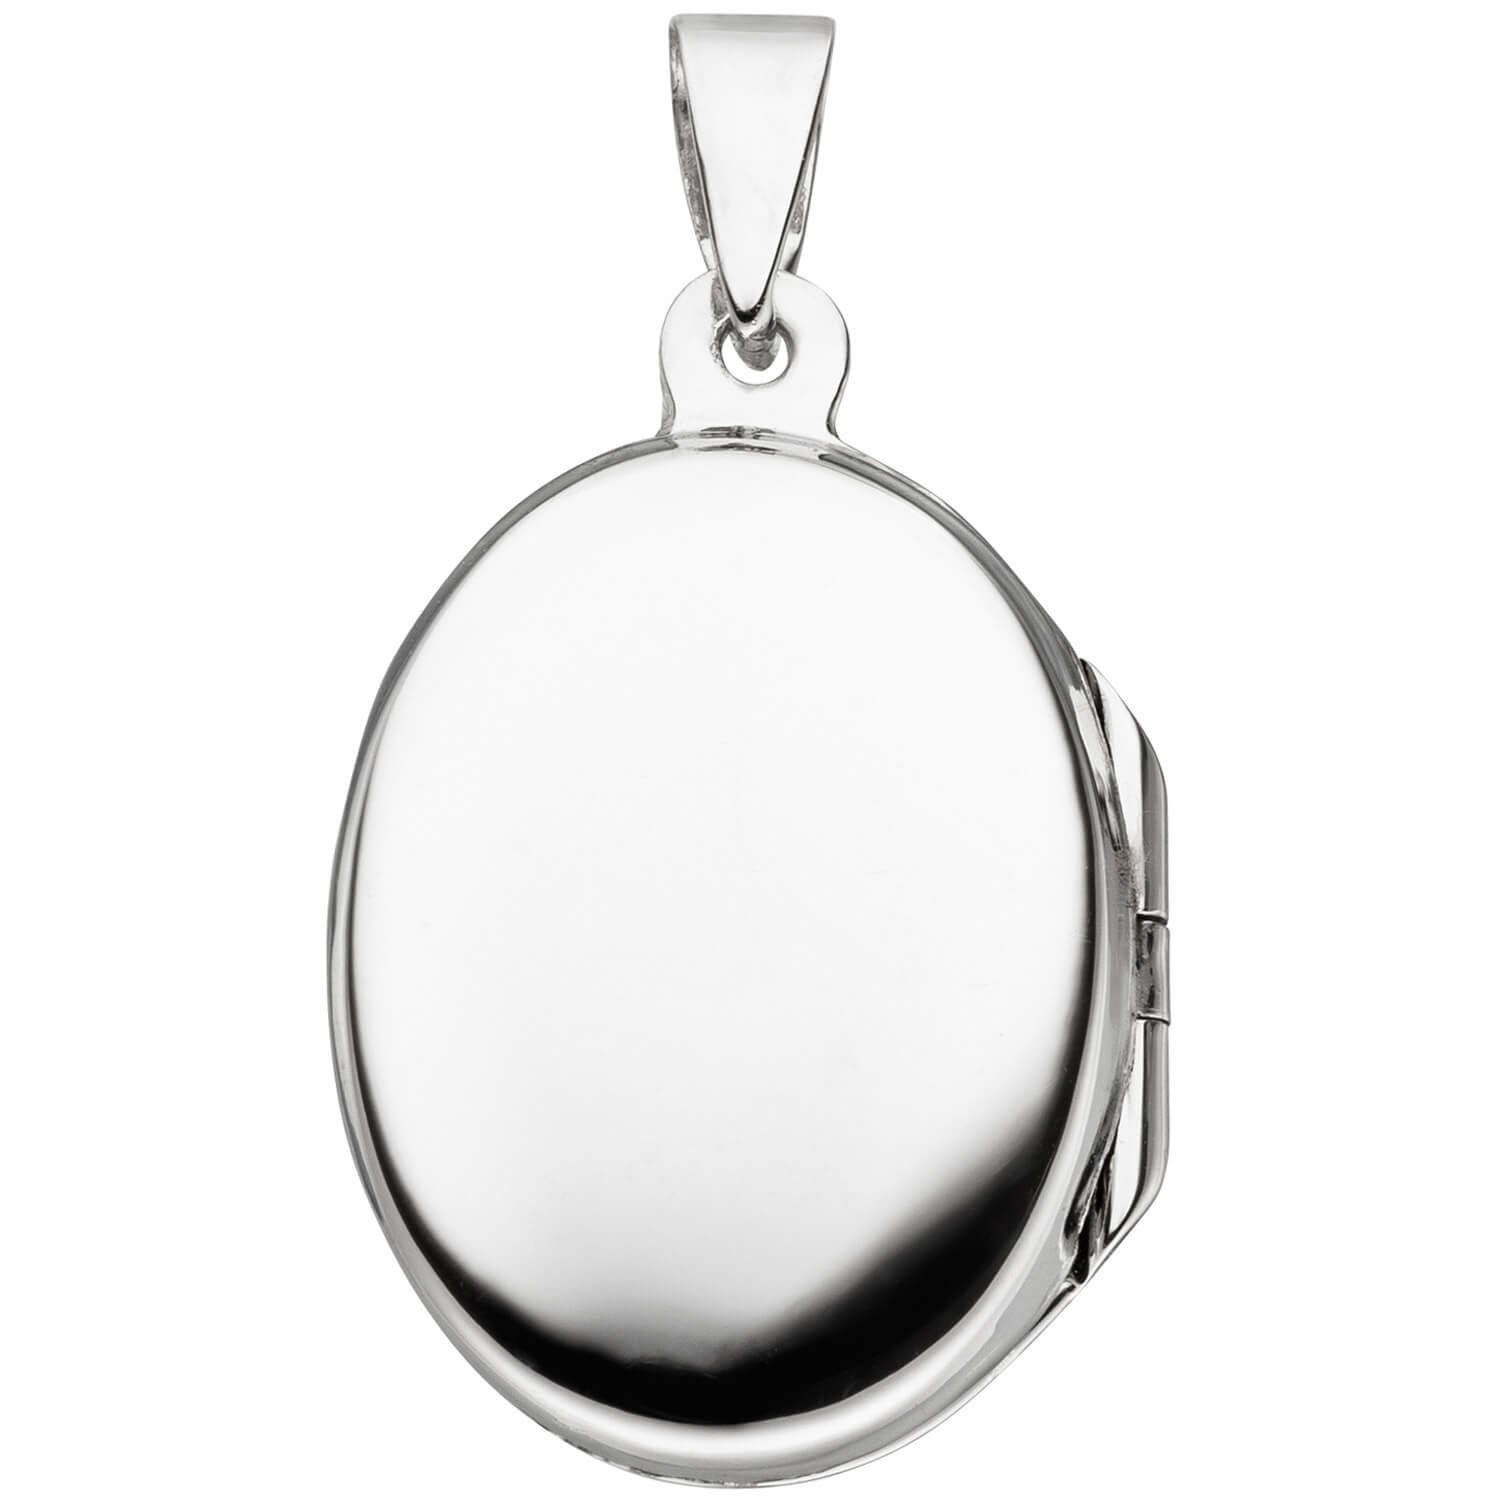 Silber Medaillon Schmuck Silberkette 42cm Öffnen Schmetterling zum oval mit Krone Halskette 925 2 Fotos